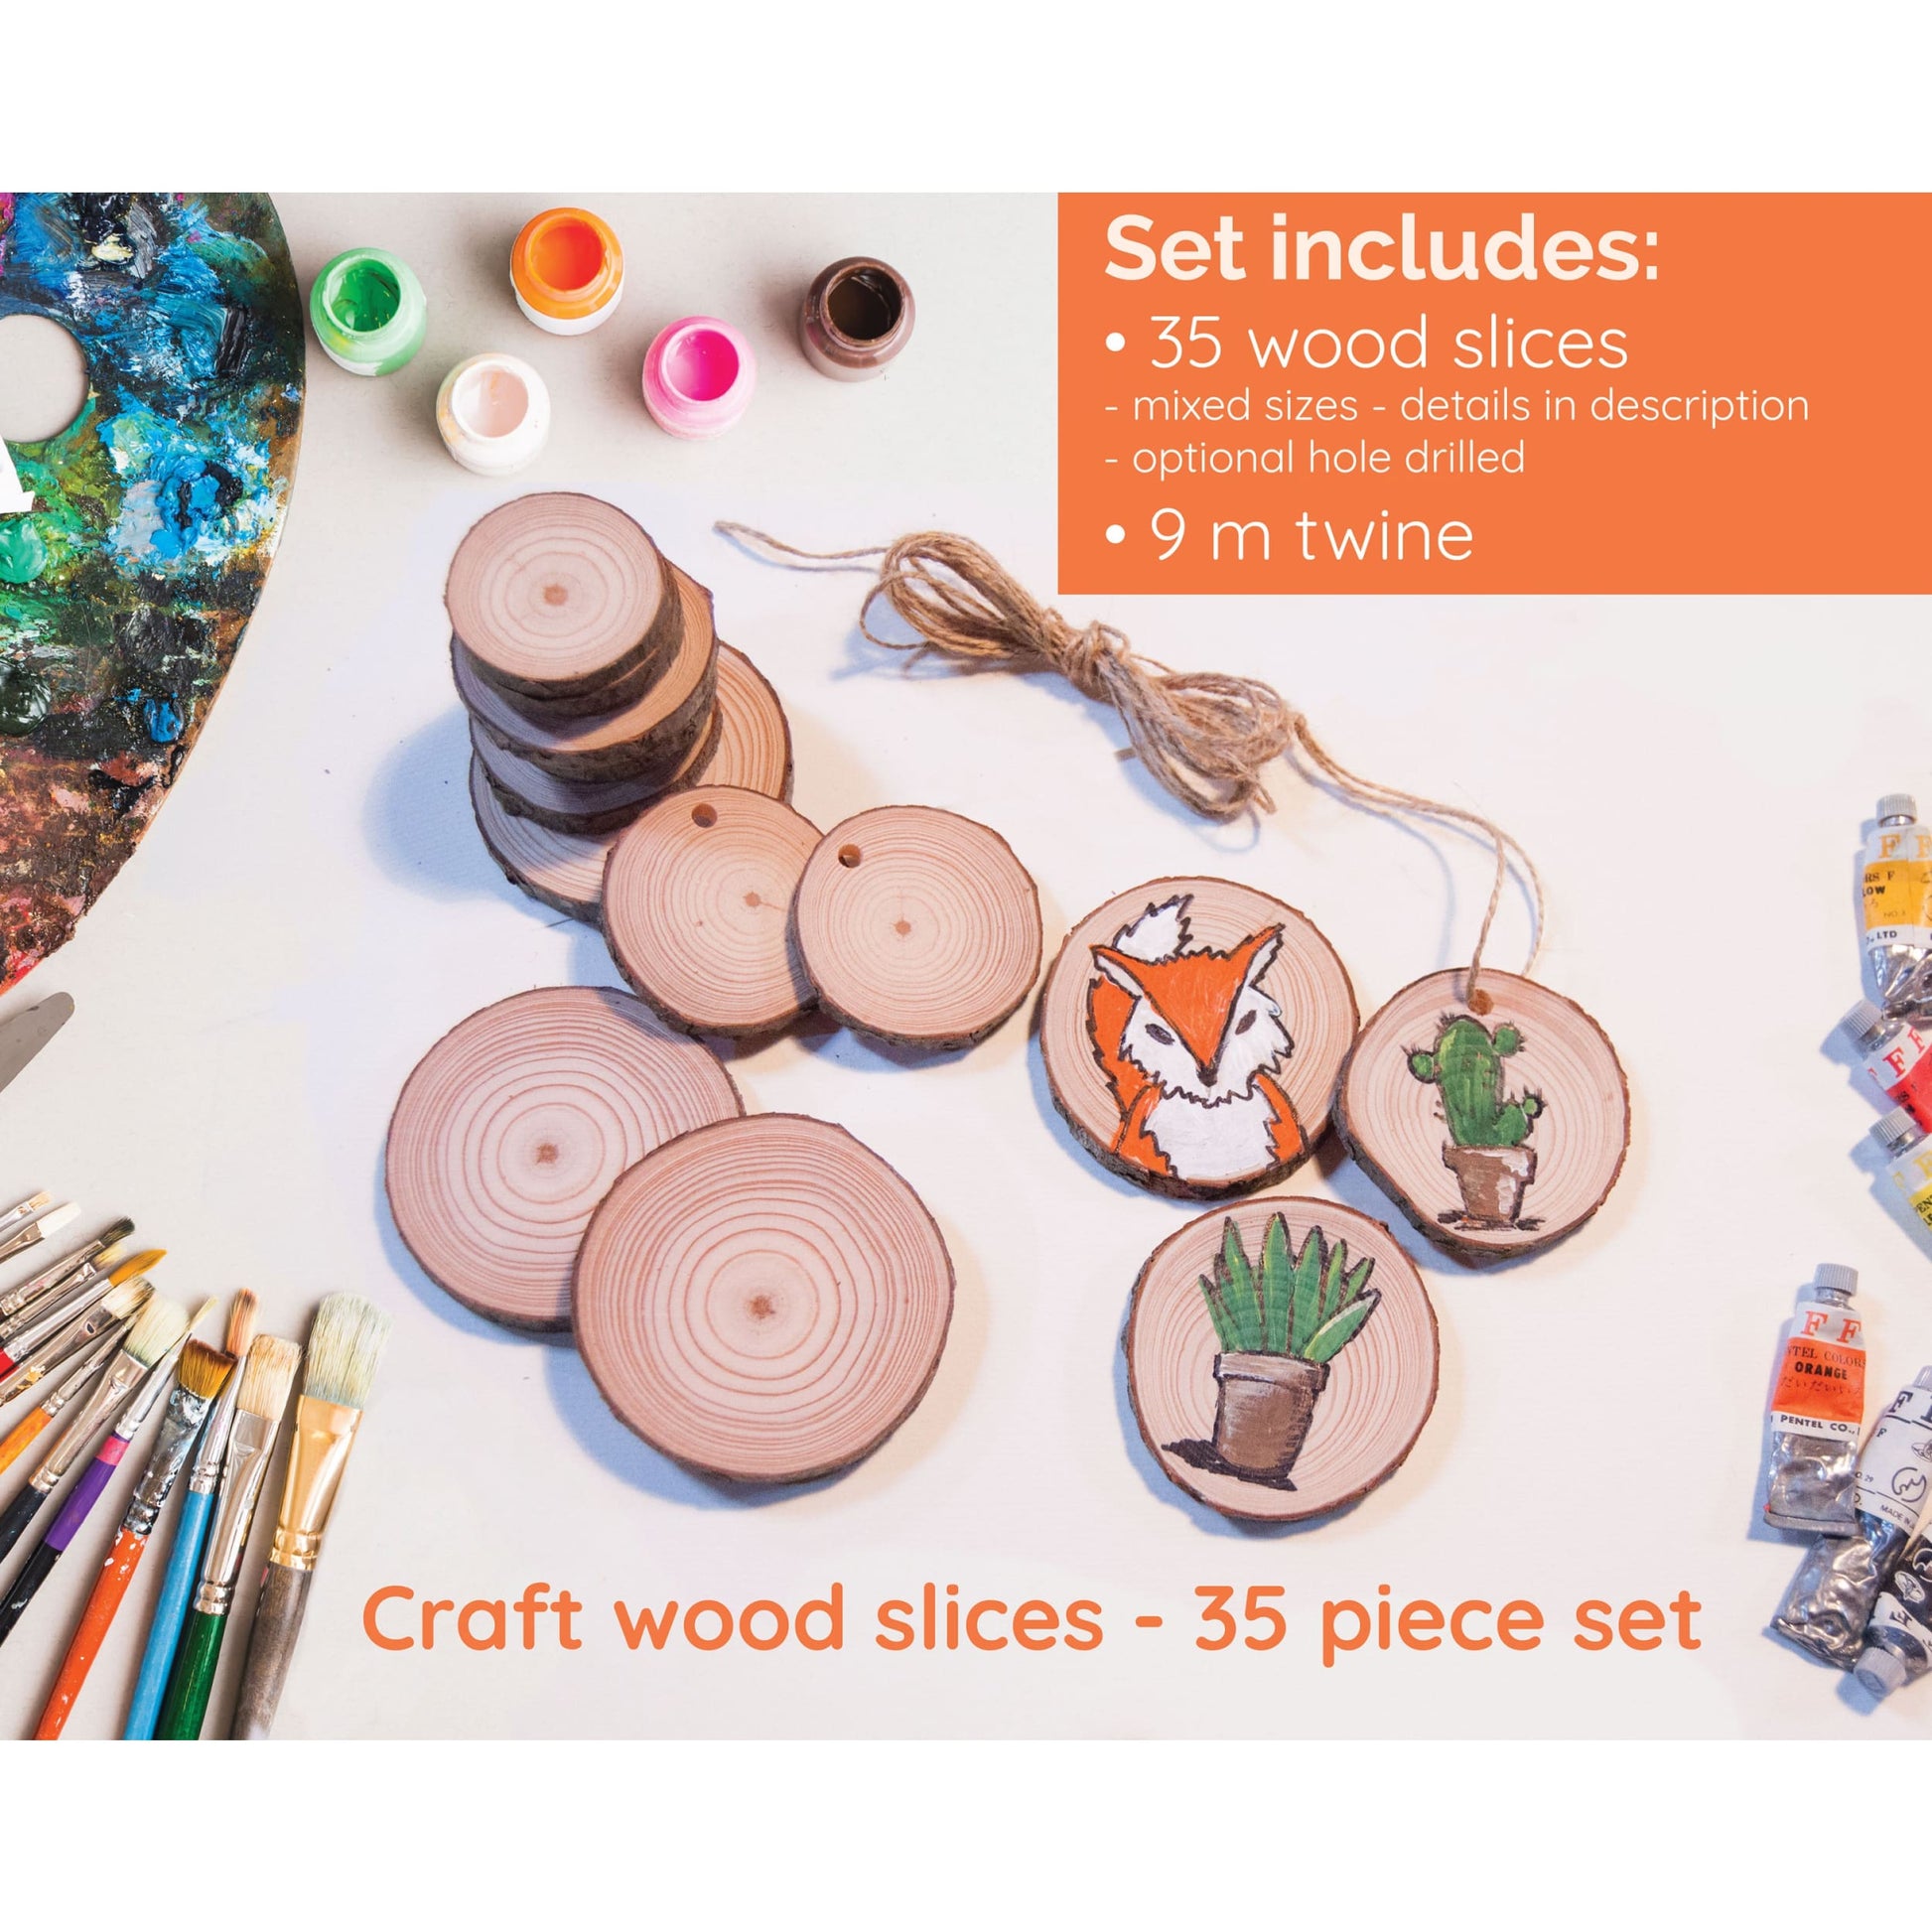 35 Piece Wood Slice Craft Pack - Wood slice kits